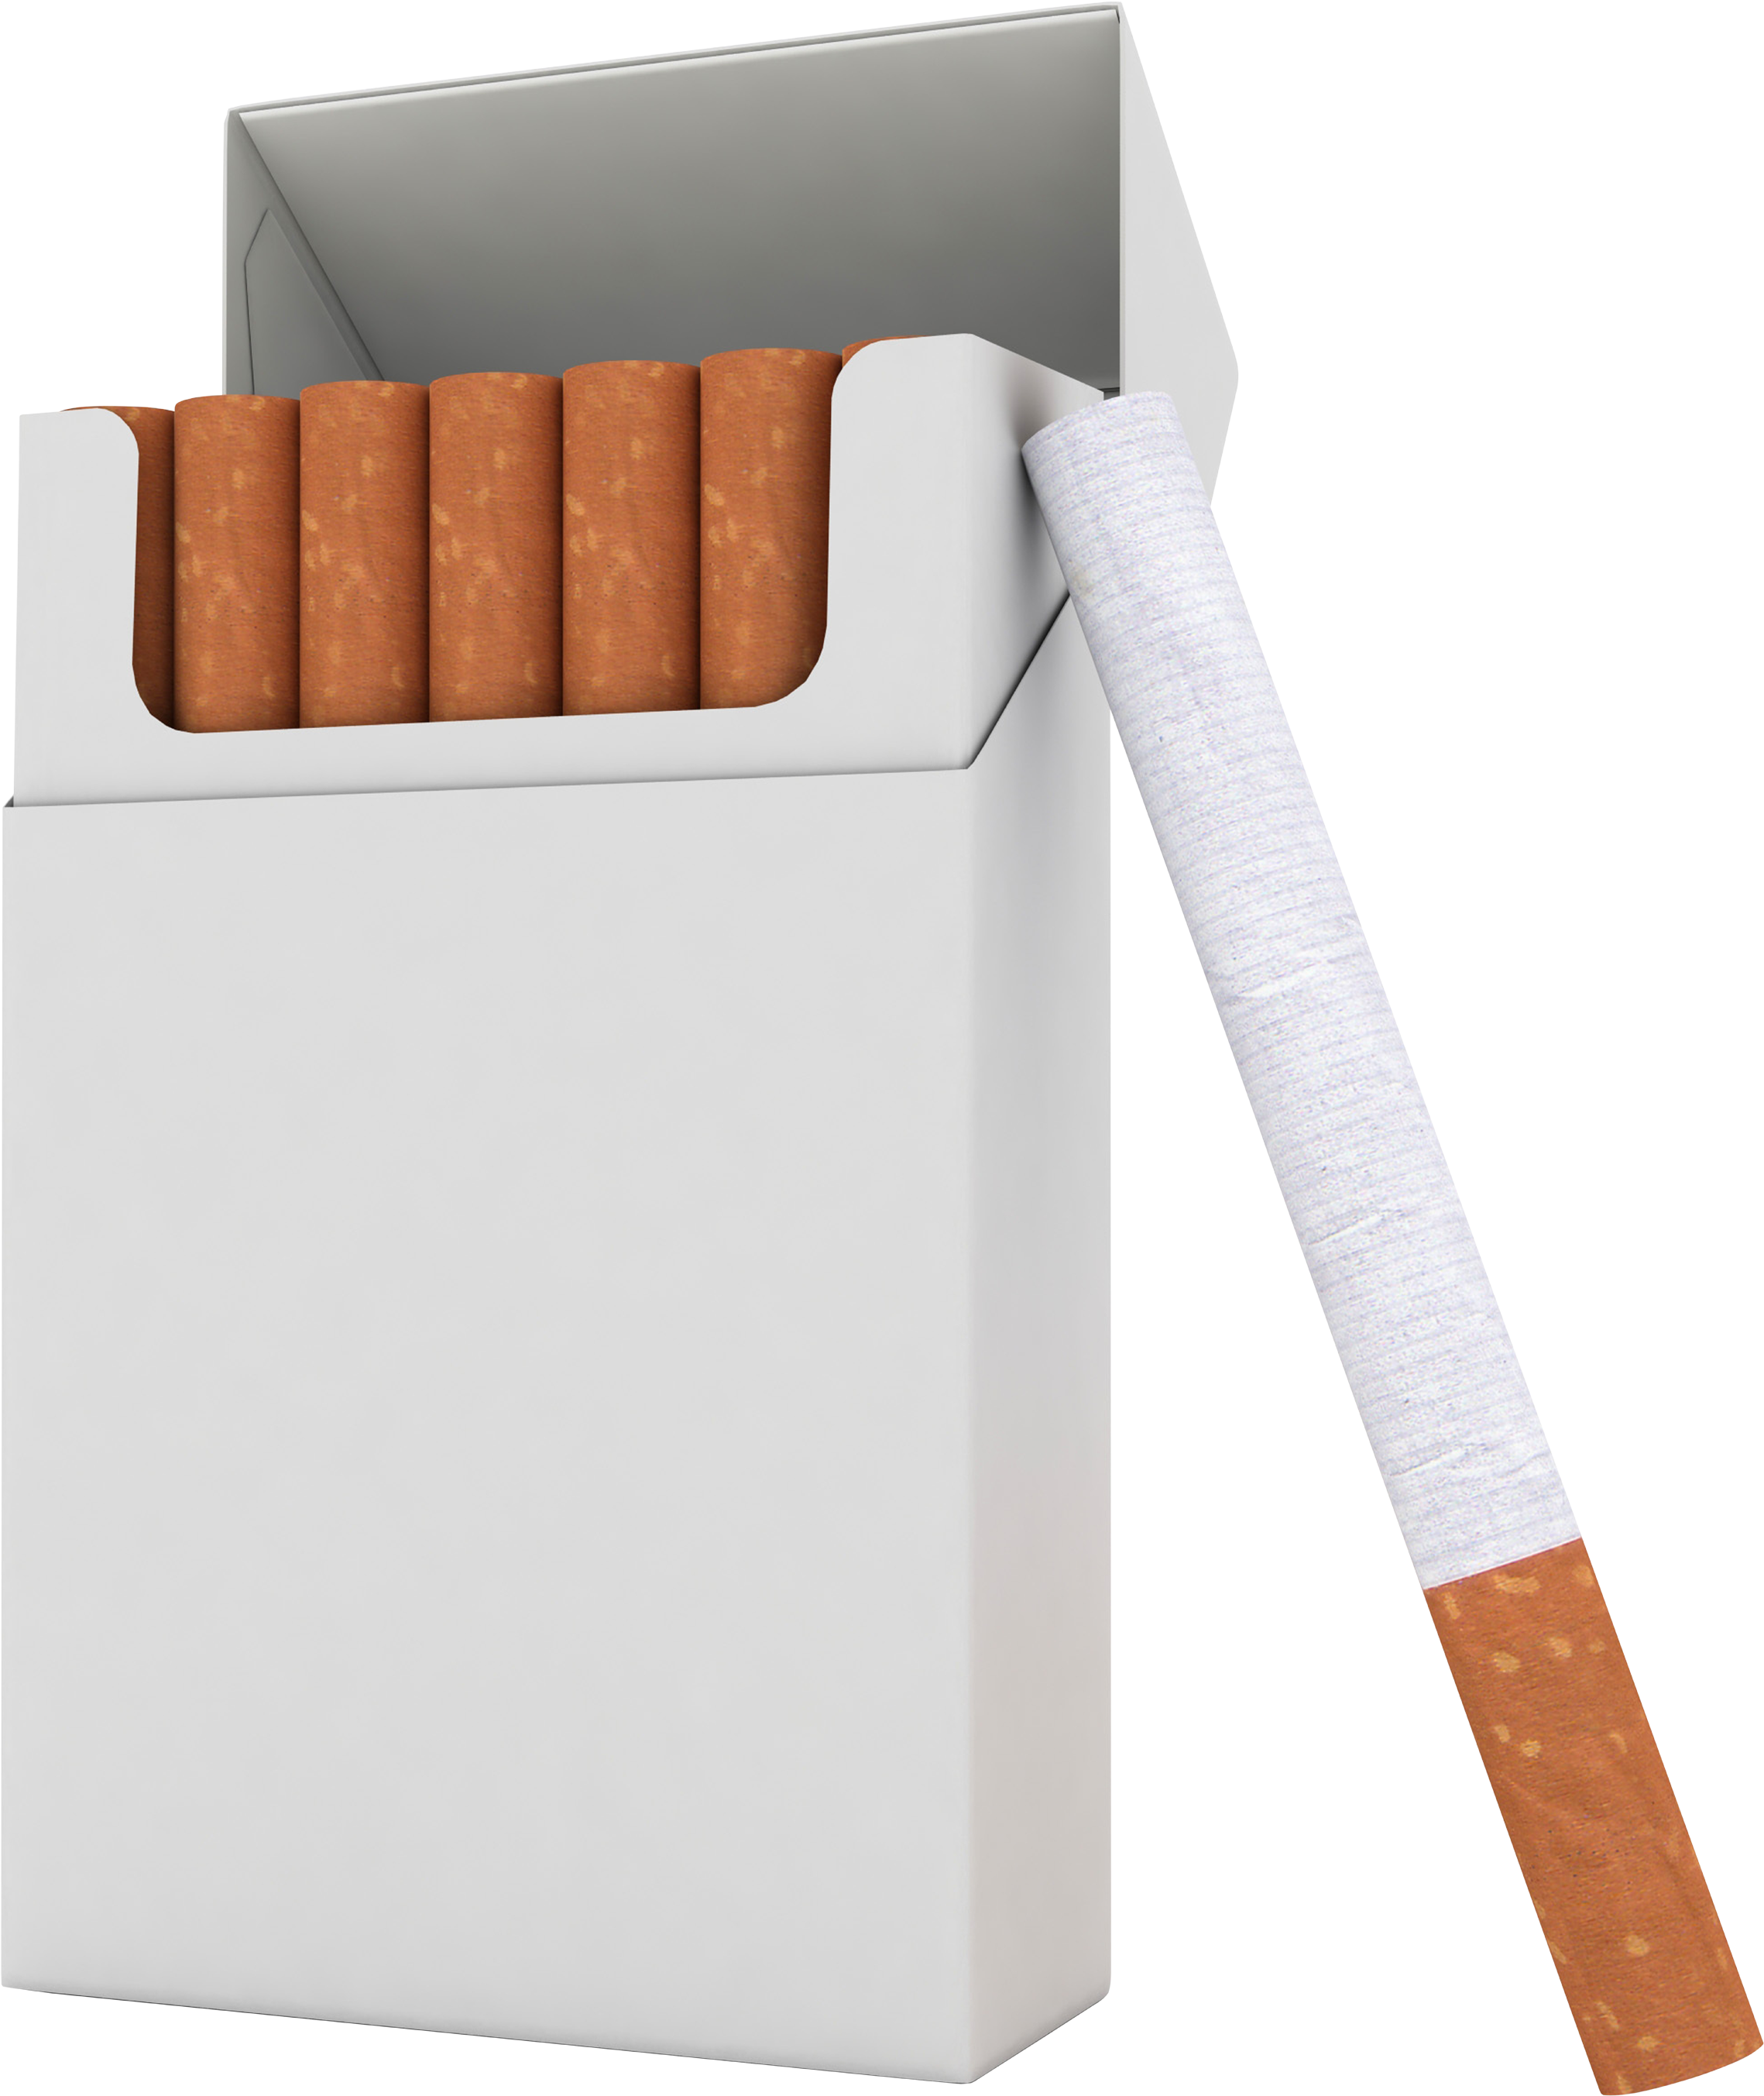 pollution clipart cigarette